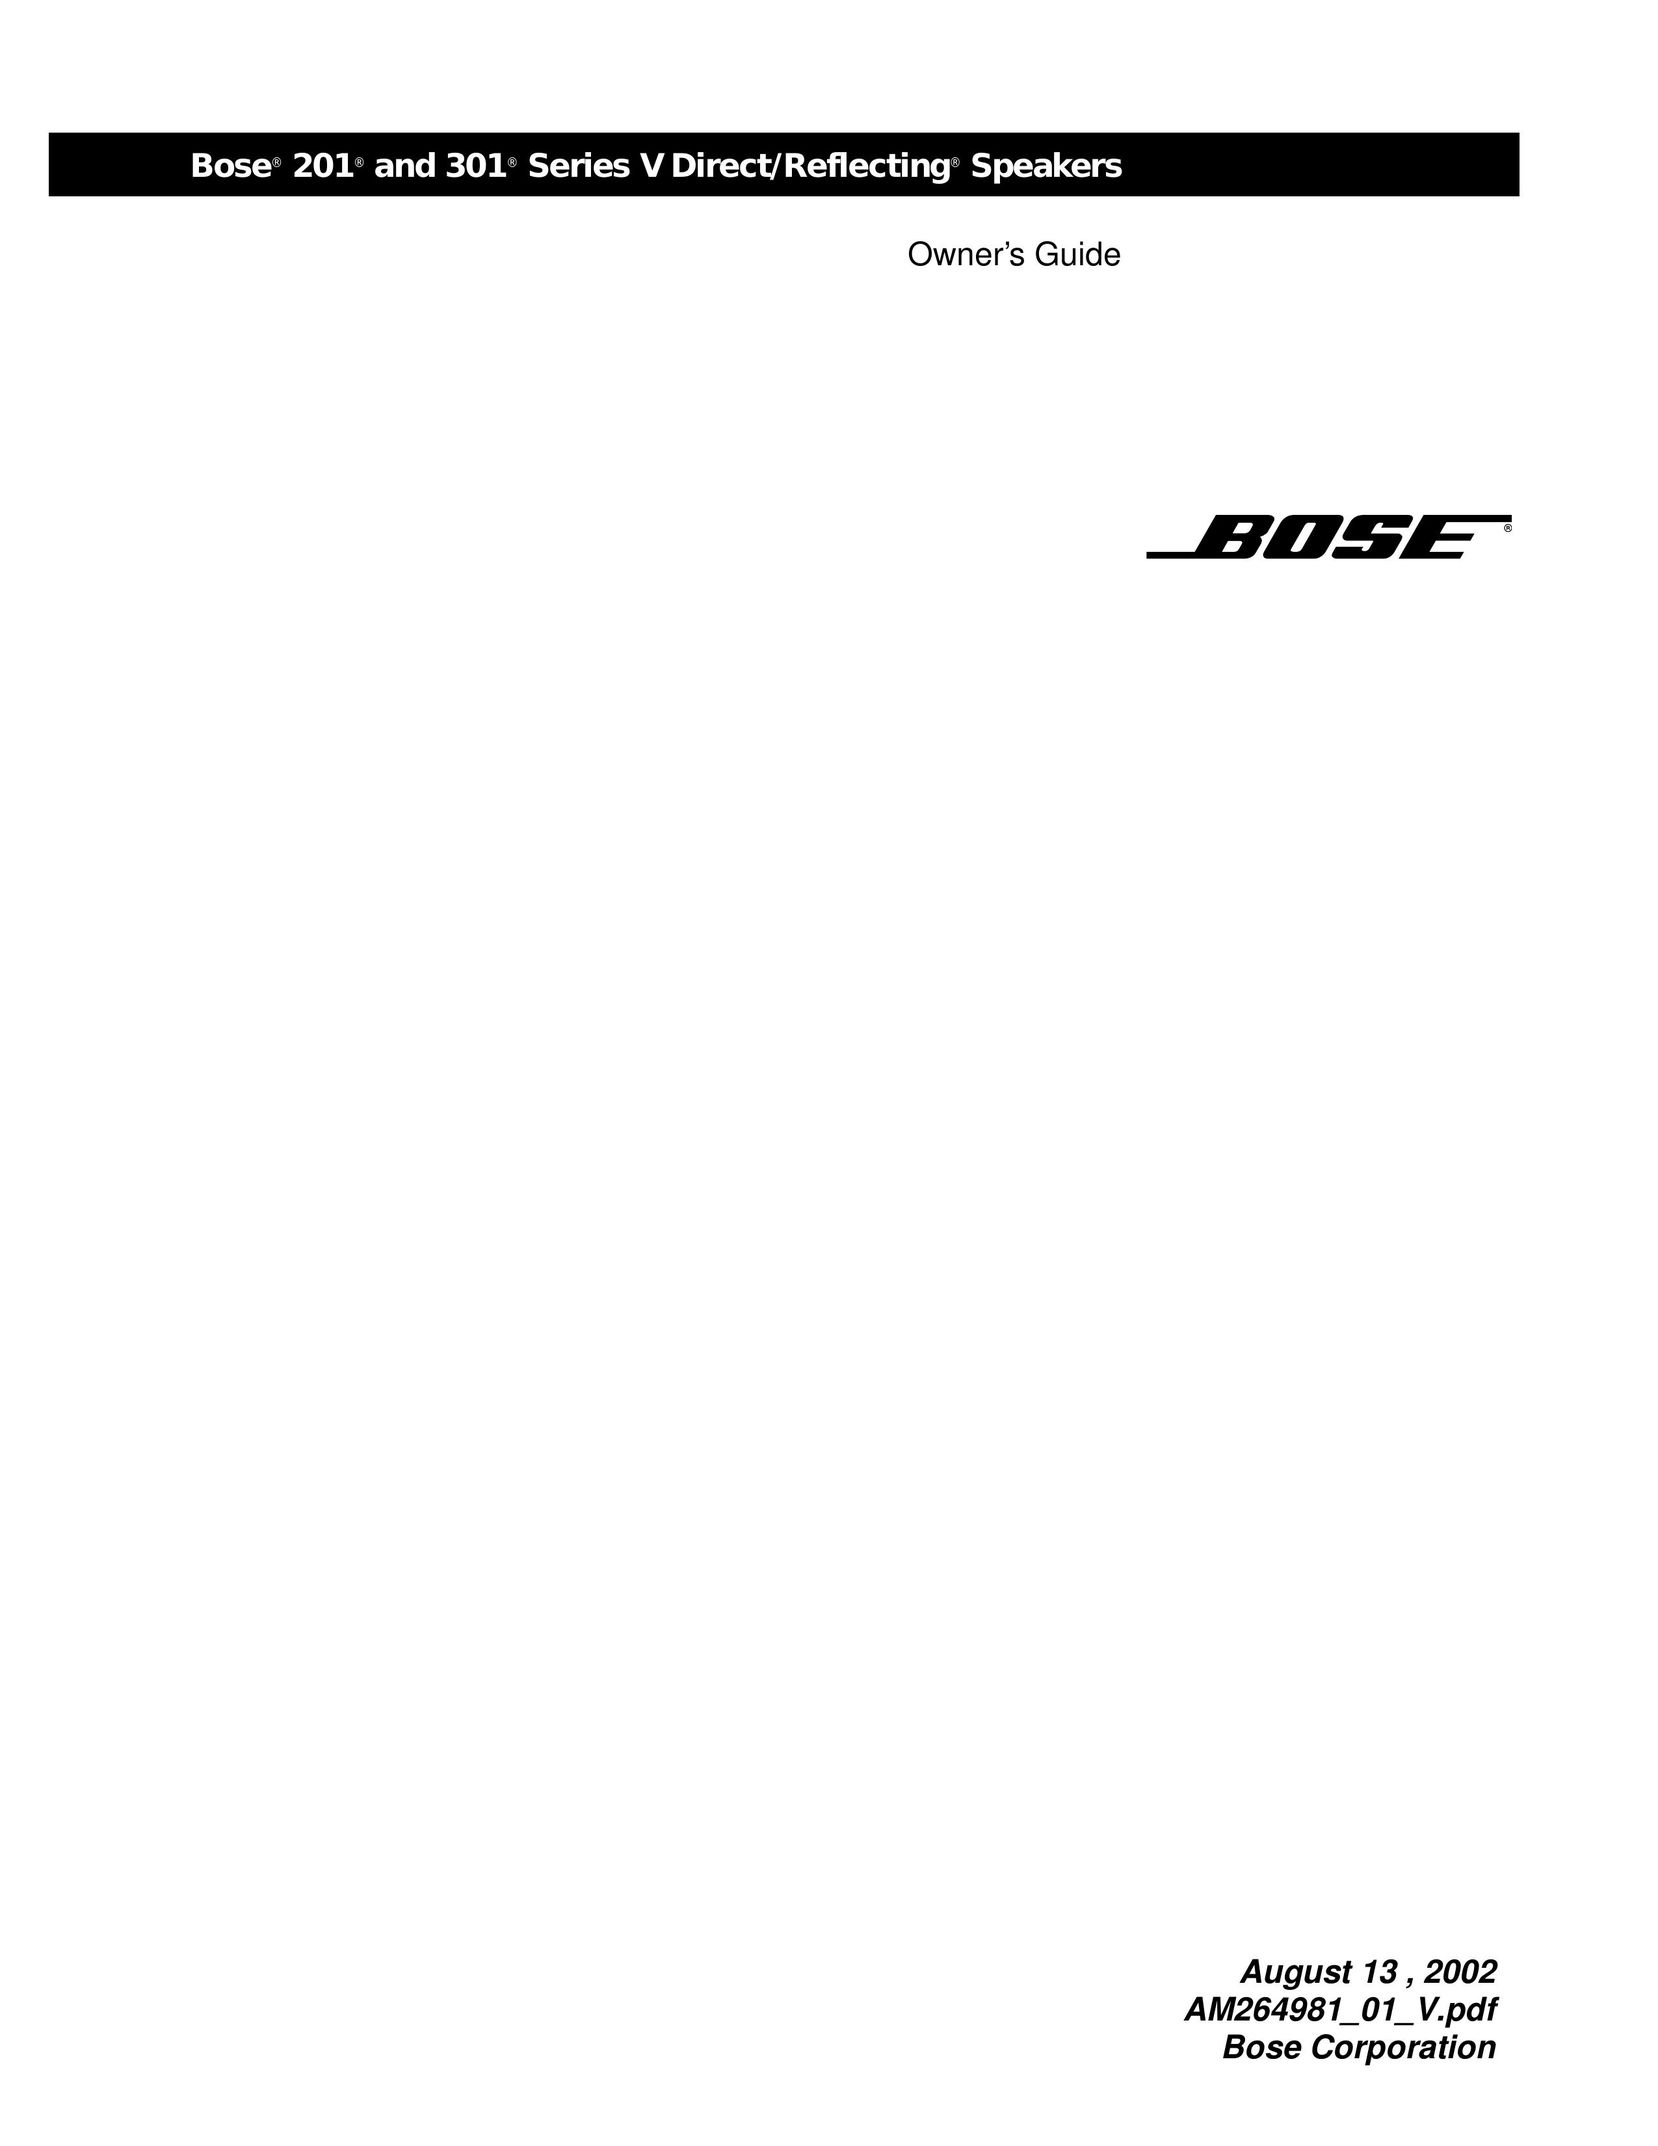 Bose 29297 Car Speaker User Manual